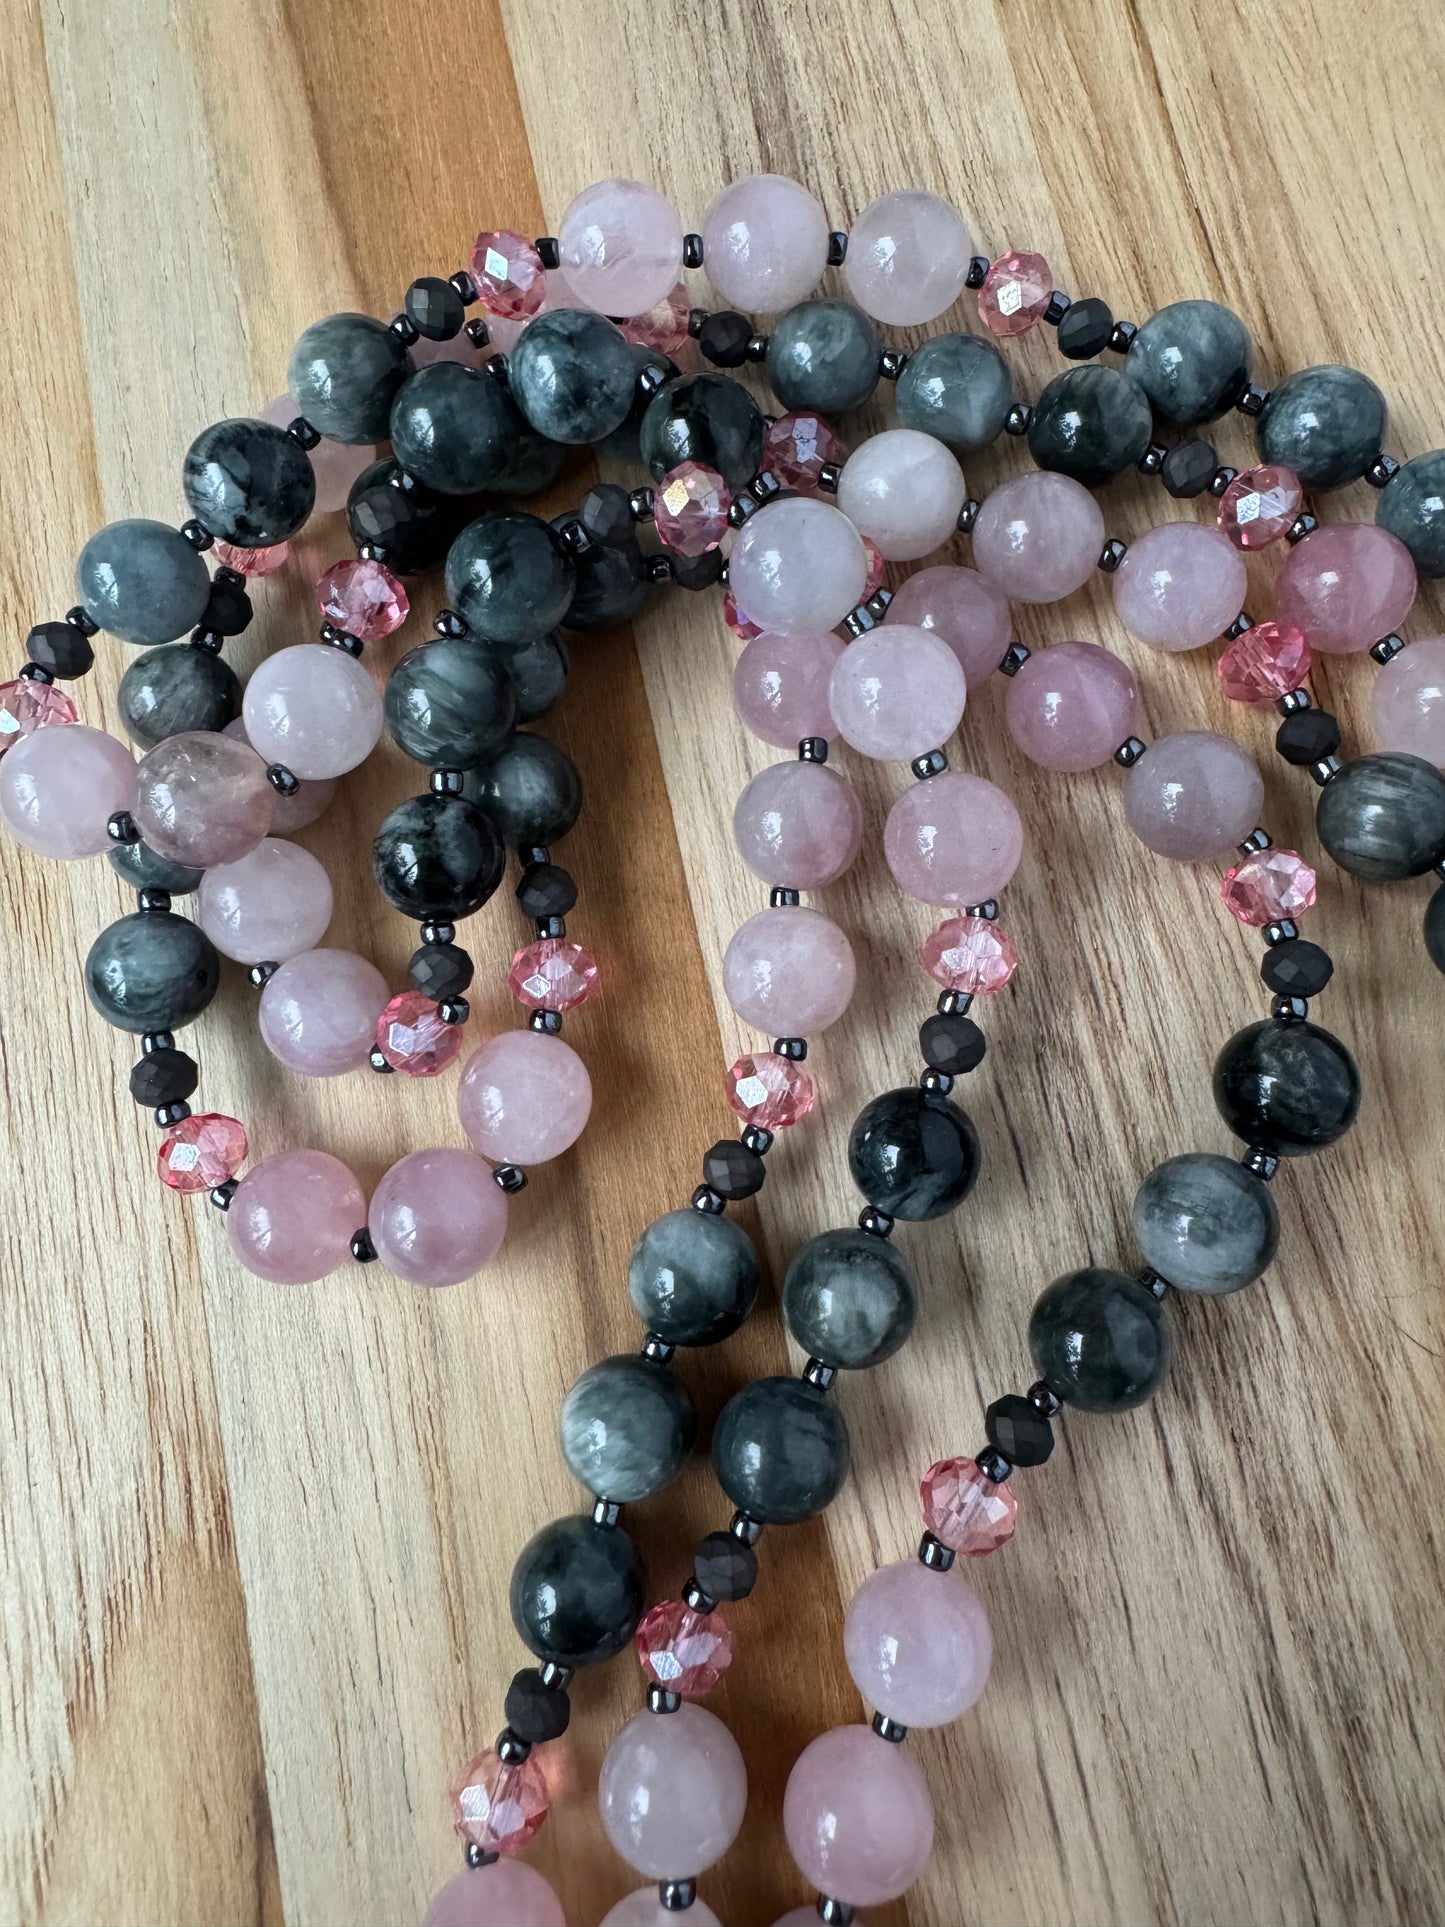 Extra long Wraparound Beaded Necklace with Eagle Eye Stone Madagascar Rose Quartz and Crystal Beads